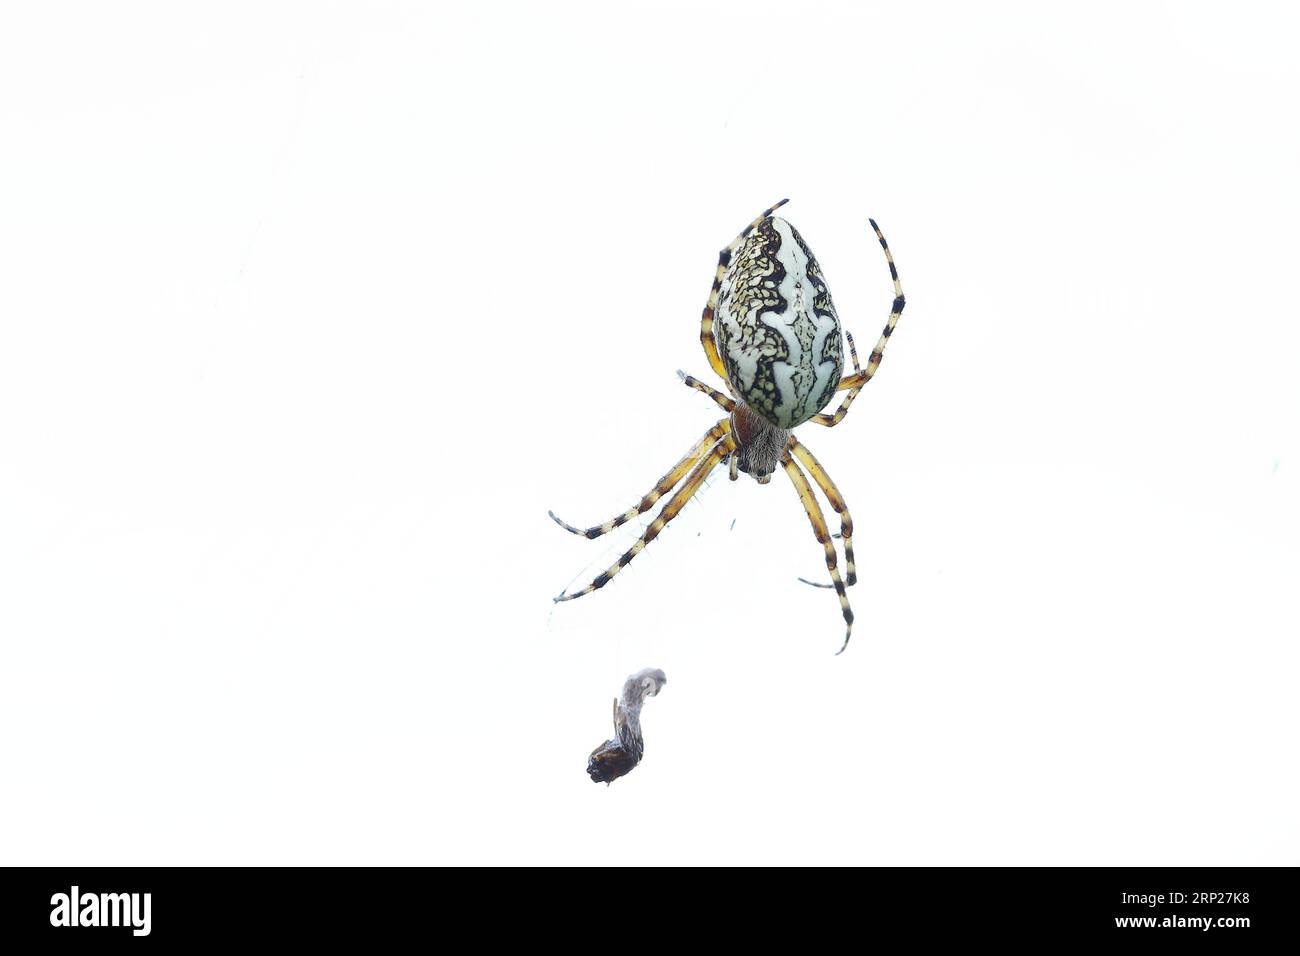 Araignée de feuille de chêne, également araignée de chêne (Aculepeira ceropegia), image de haute clé, Westerwald, Rhénanie-Palatinat, Allemagne Banque D'Images